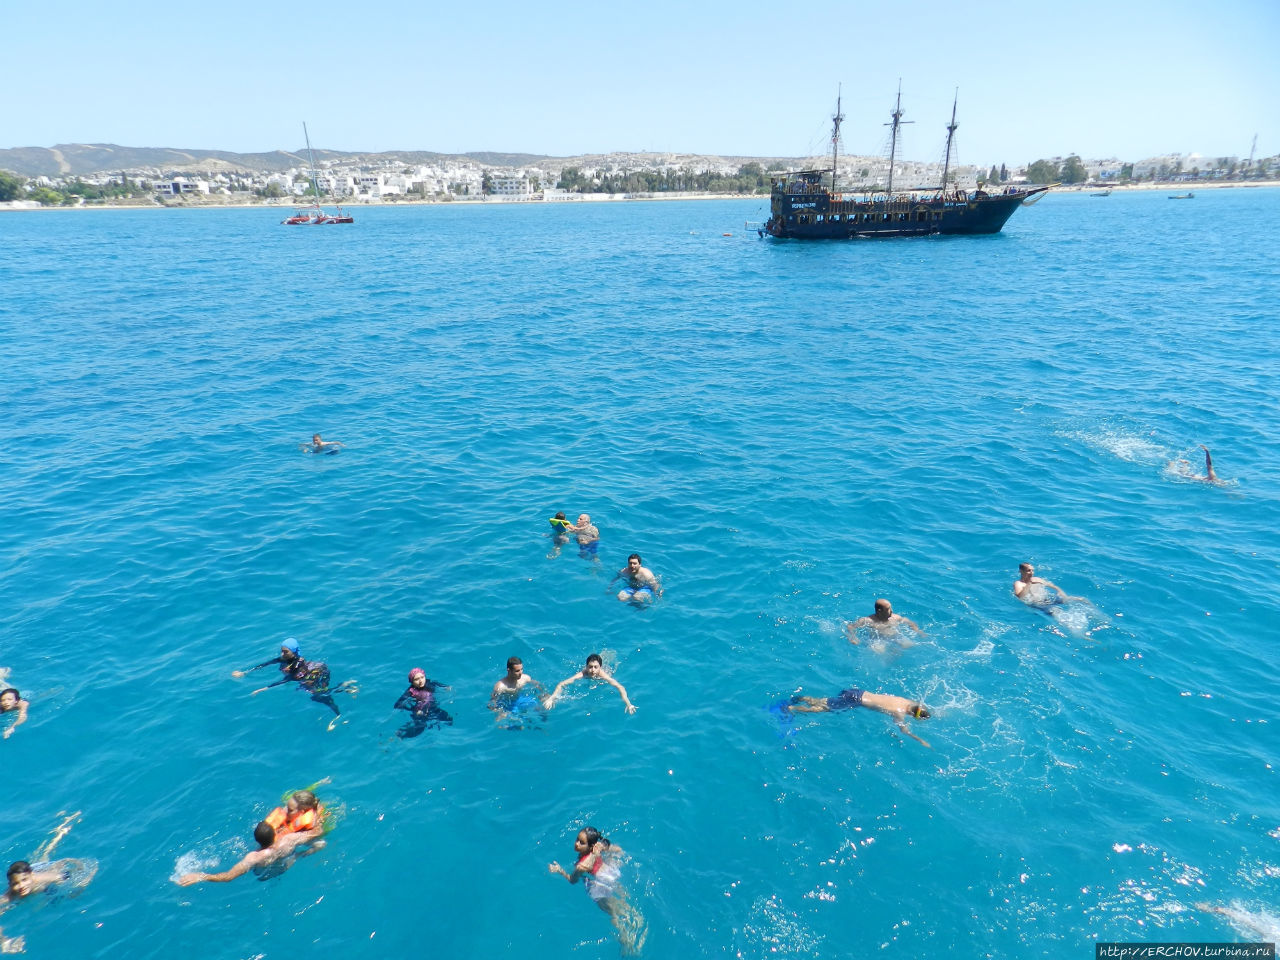 Пиратский корабль Хаммамет, Тунис